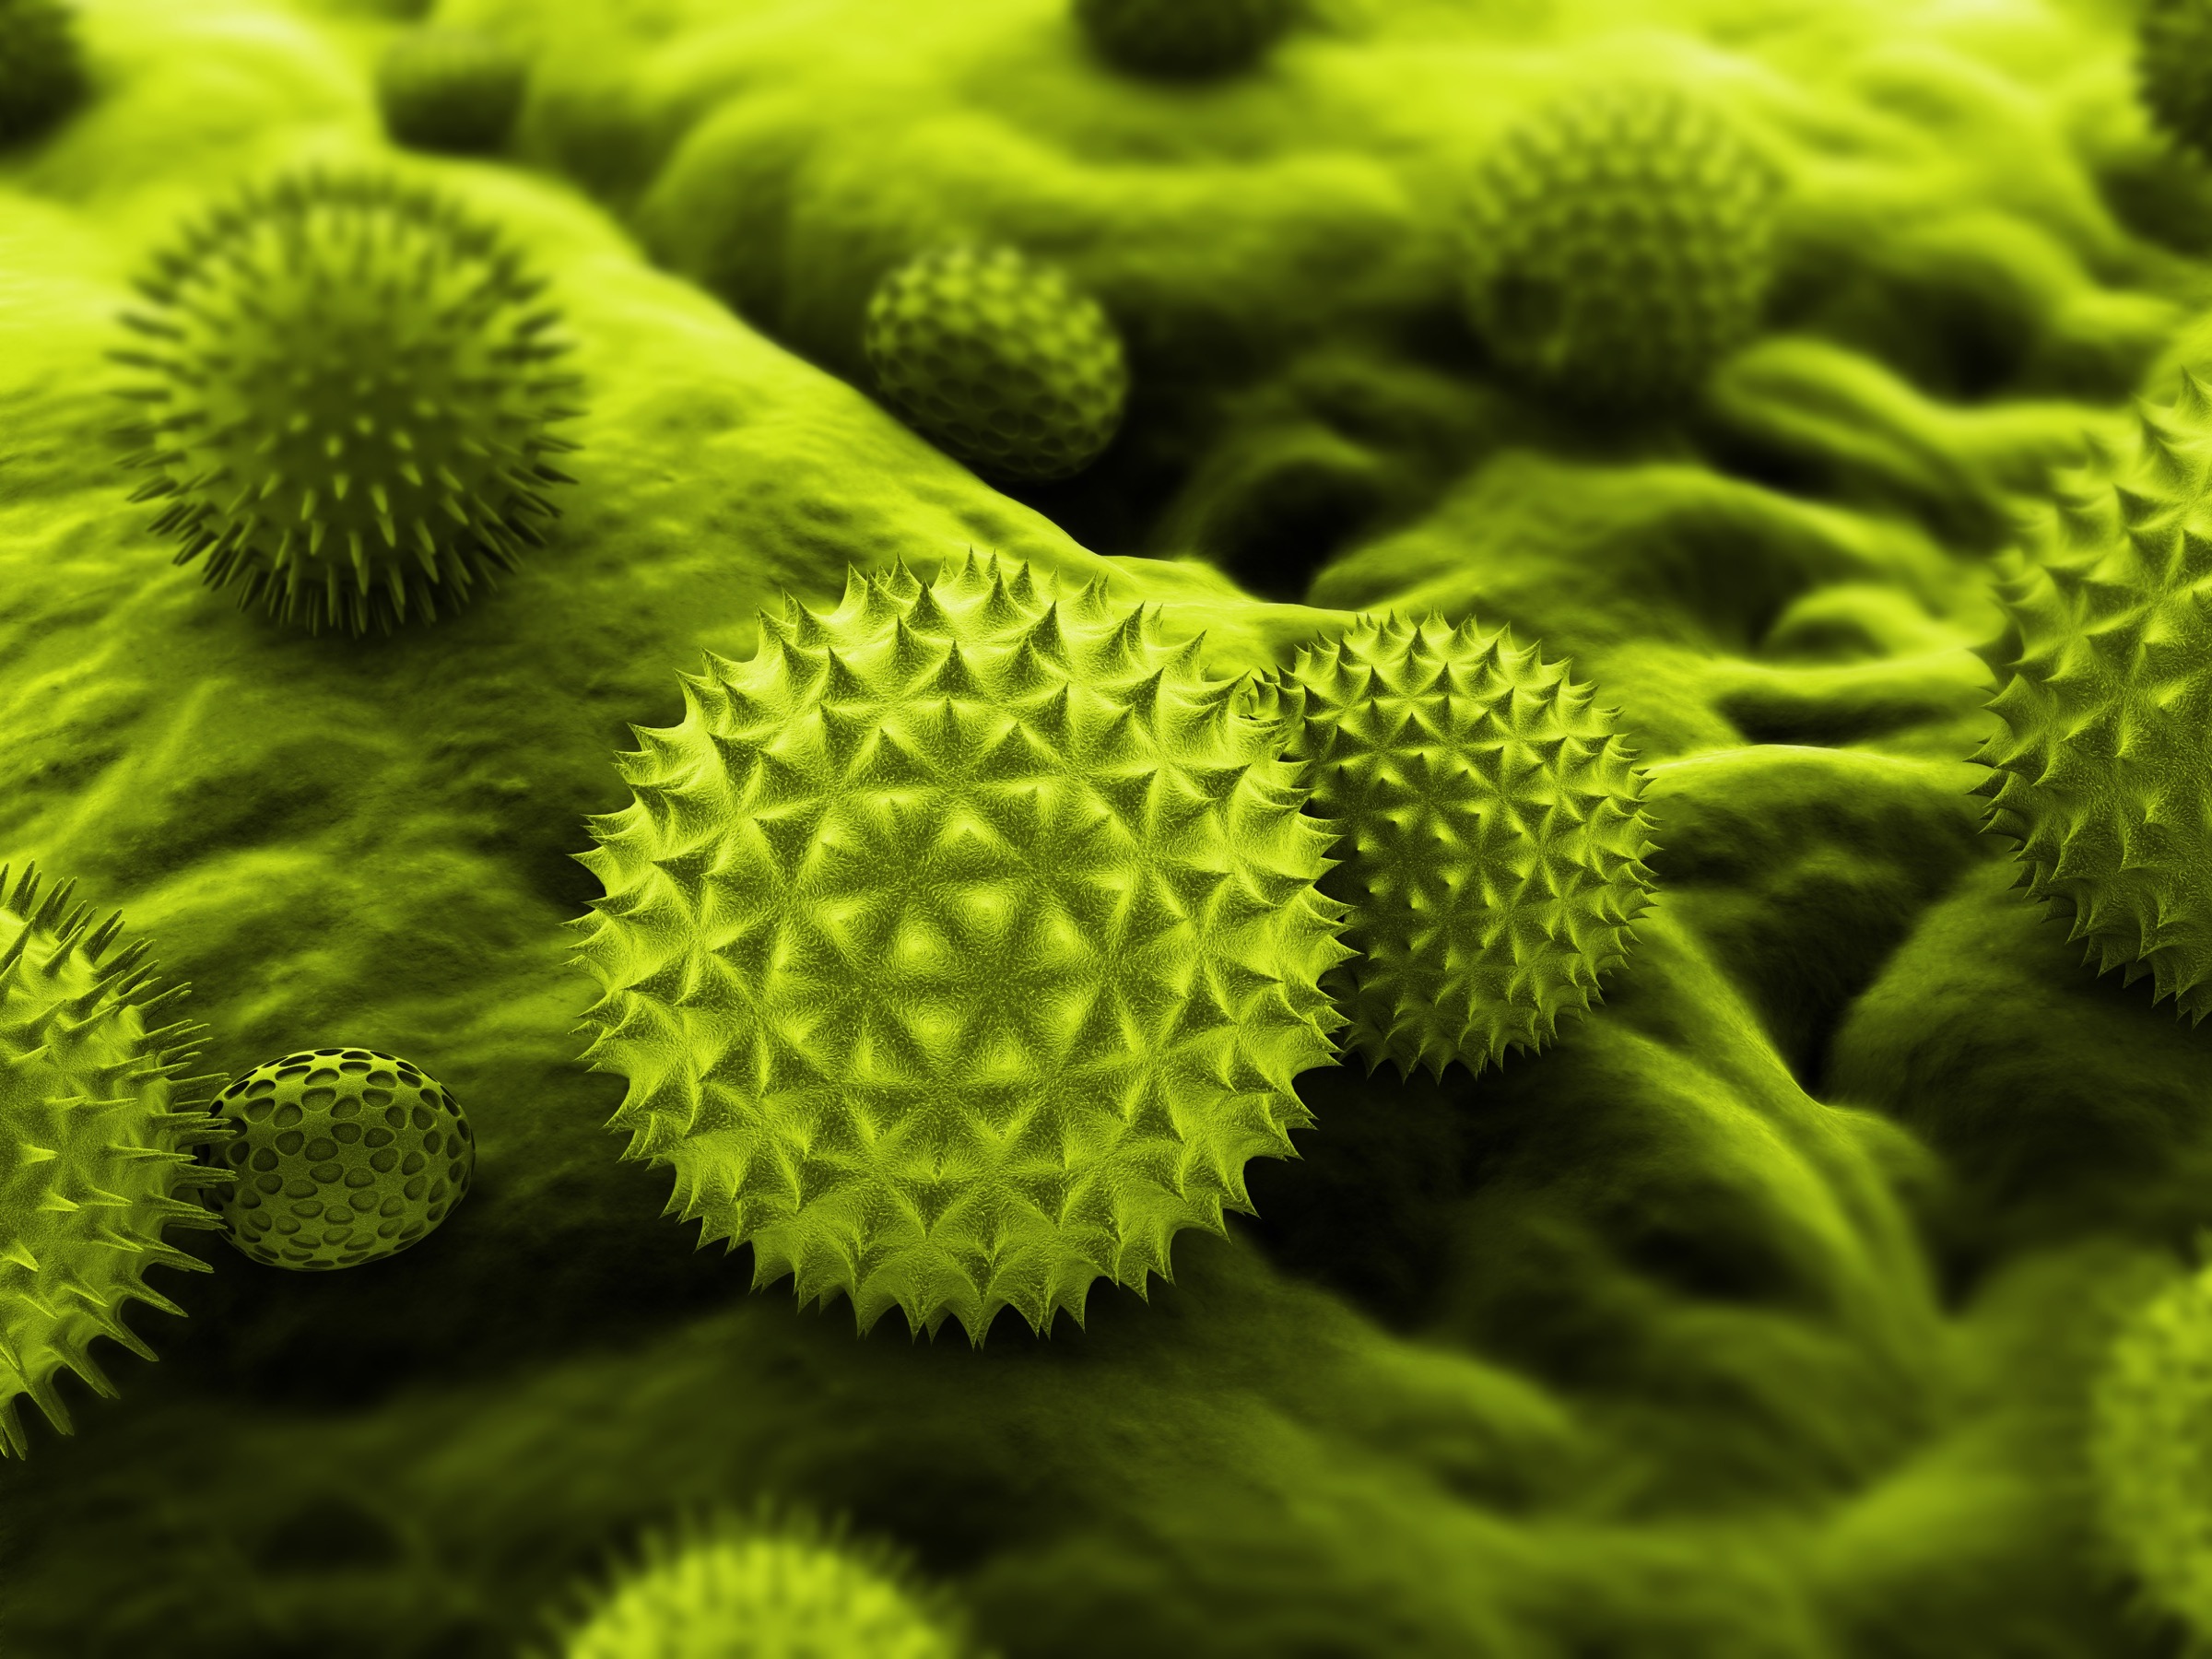 Пыльца растений является. Пыльца амброзии под микроскопом. Бактерии бронхиальной астмы. Пыльцевые и грибковые аллергены. Пыльца в микроскопе.